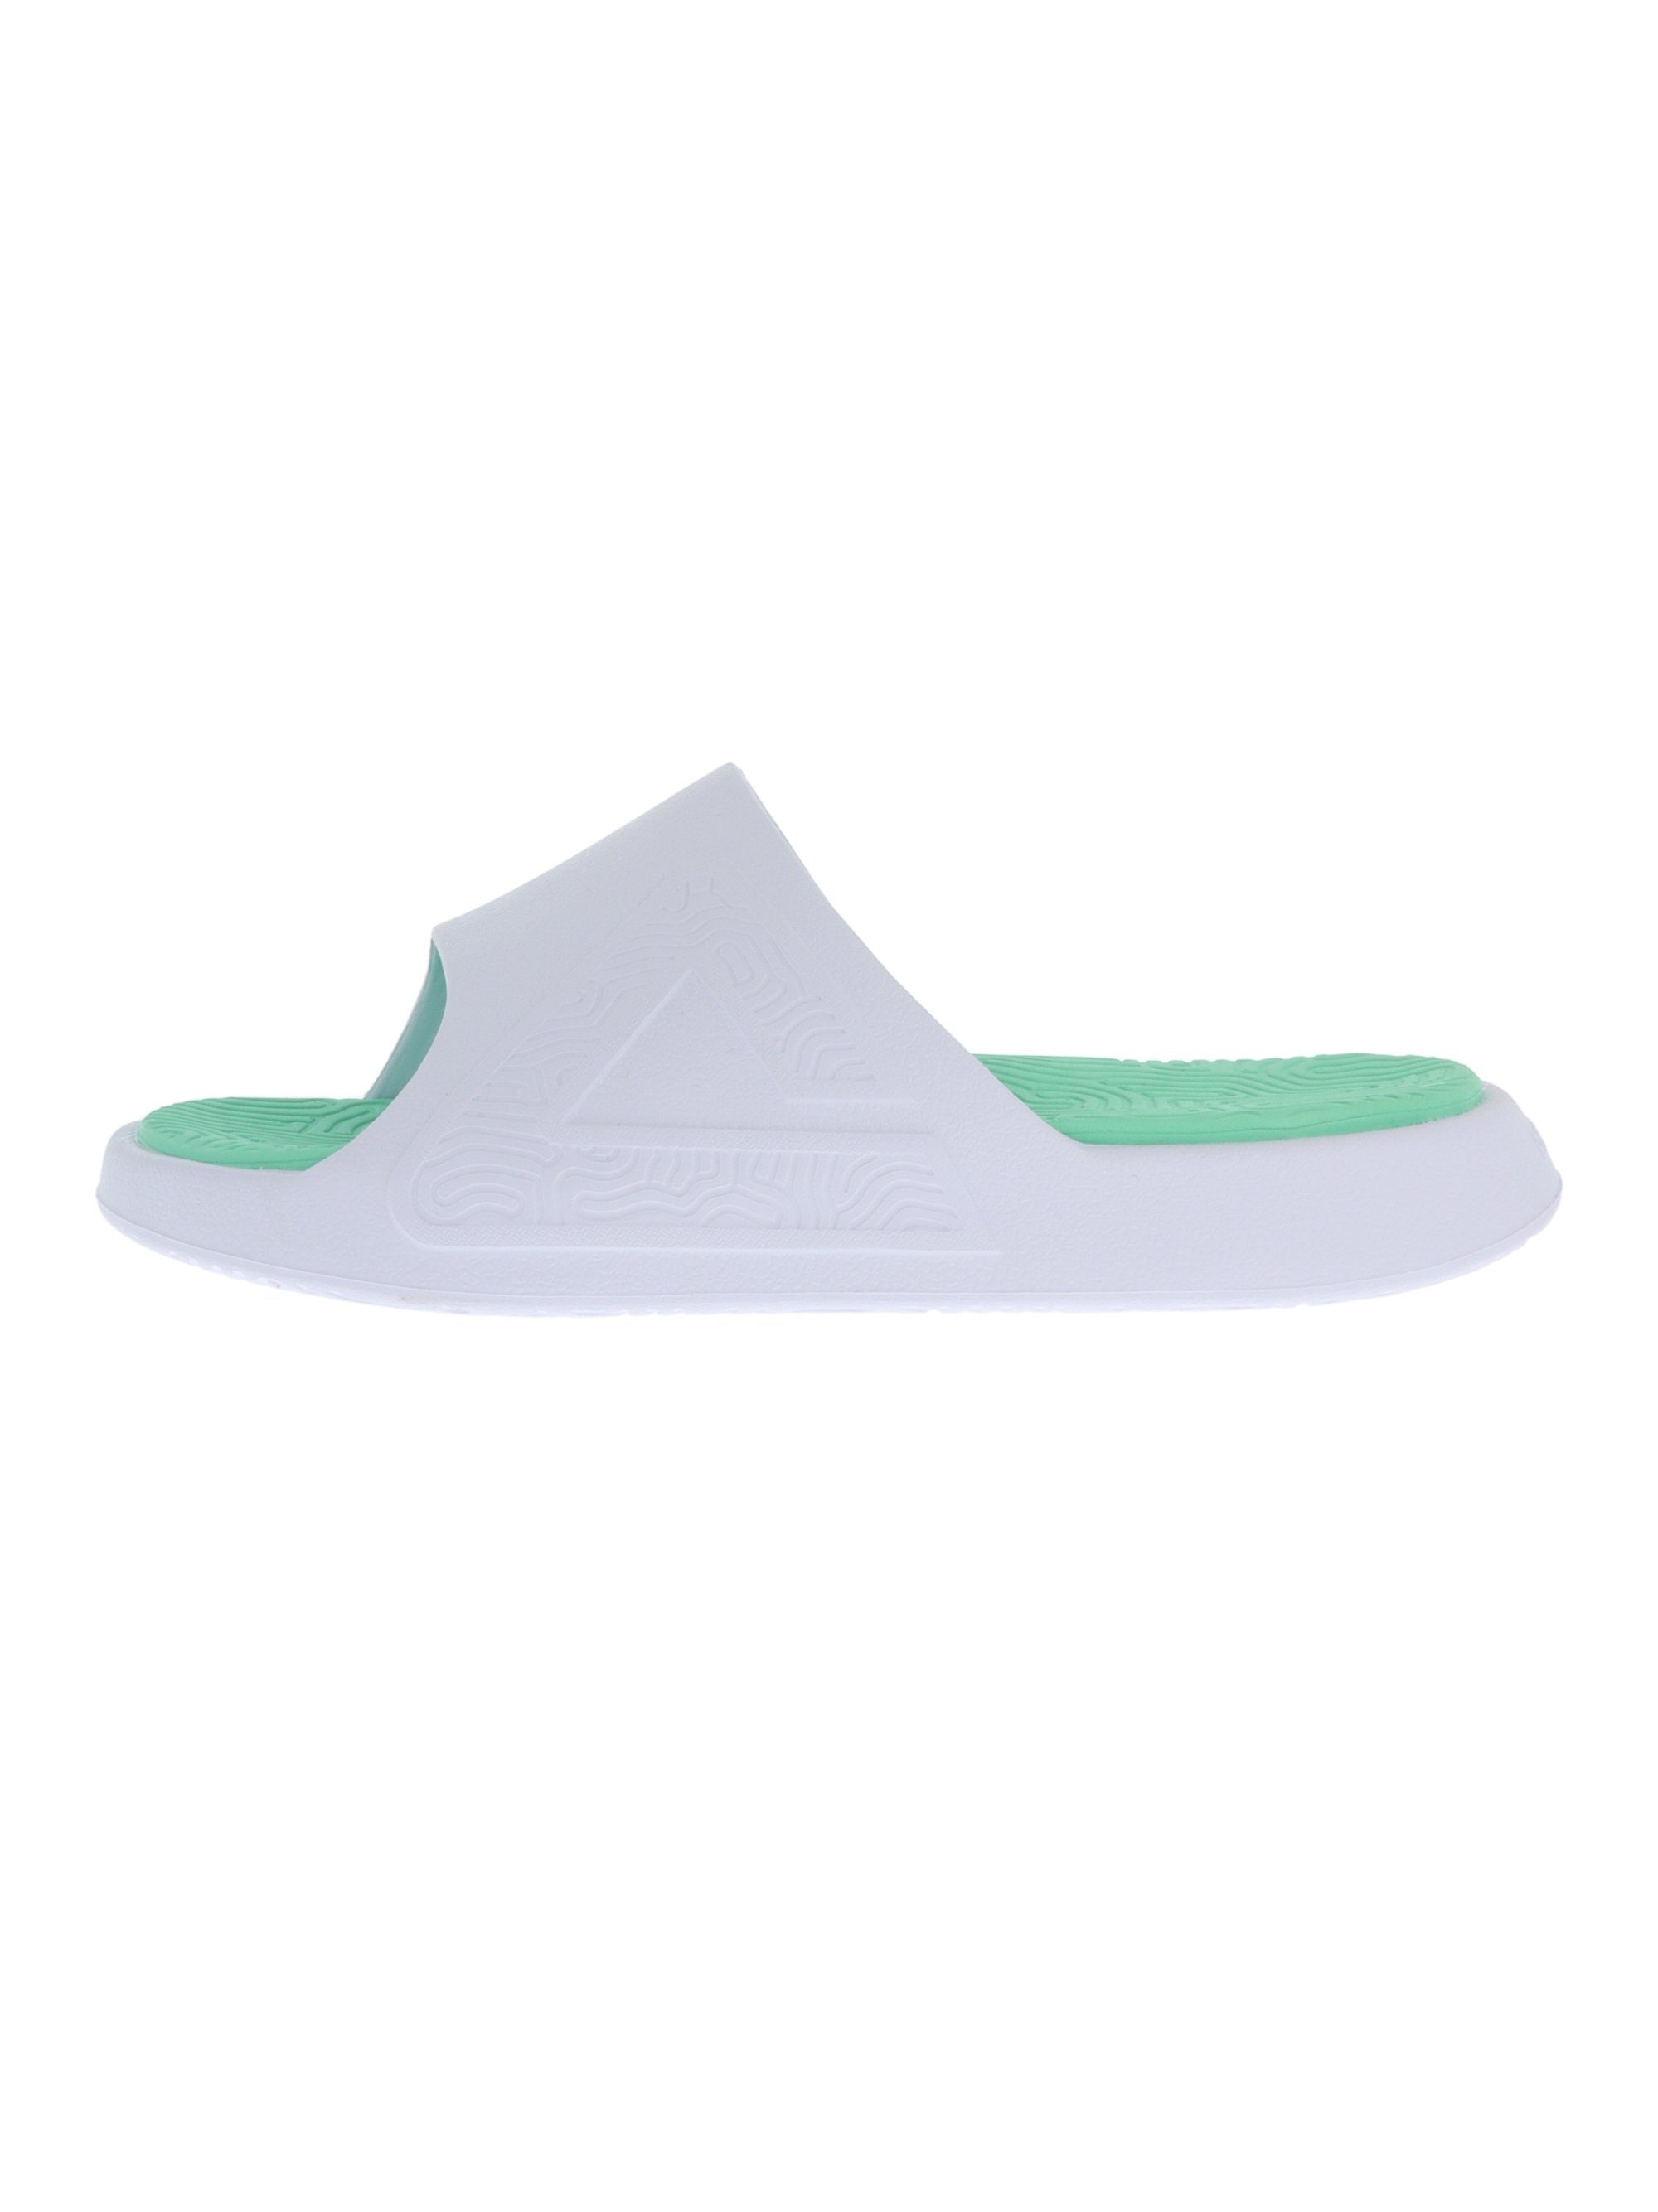 Slipper Badeschuh grün-weiß PEAK innovativer Gel-Zwischensohle TaiChi mit